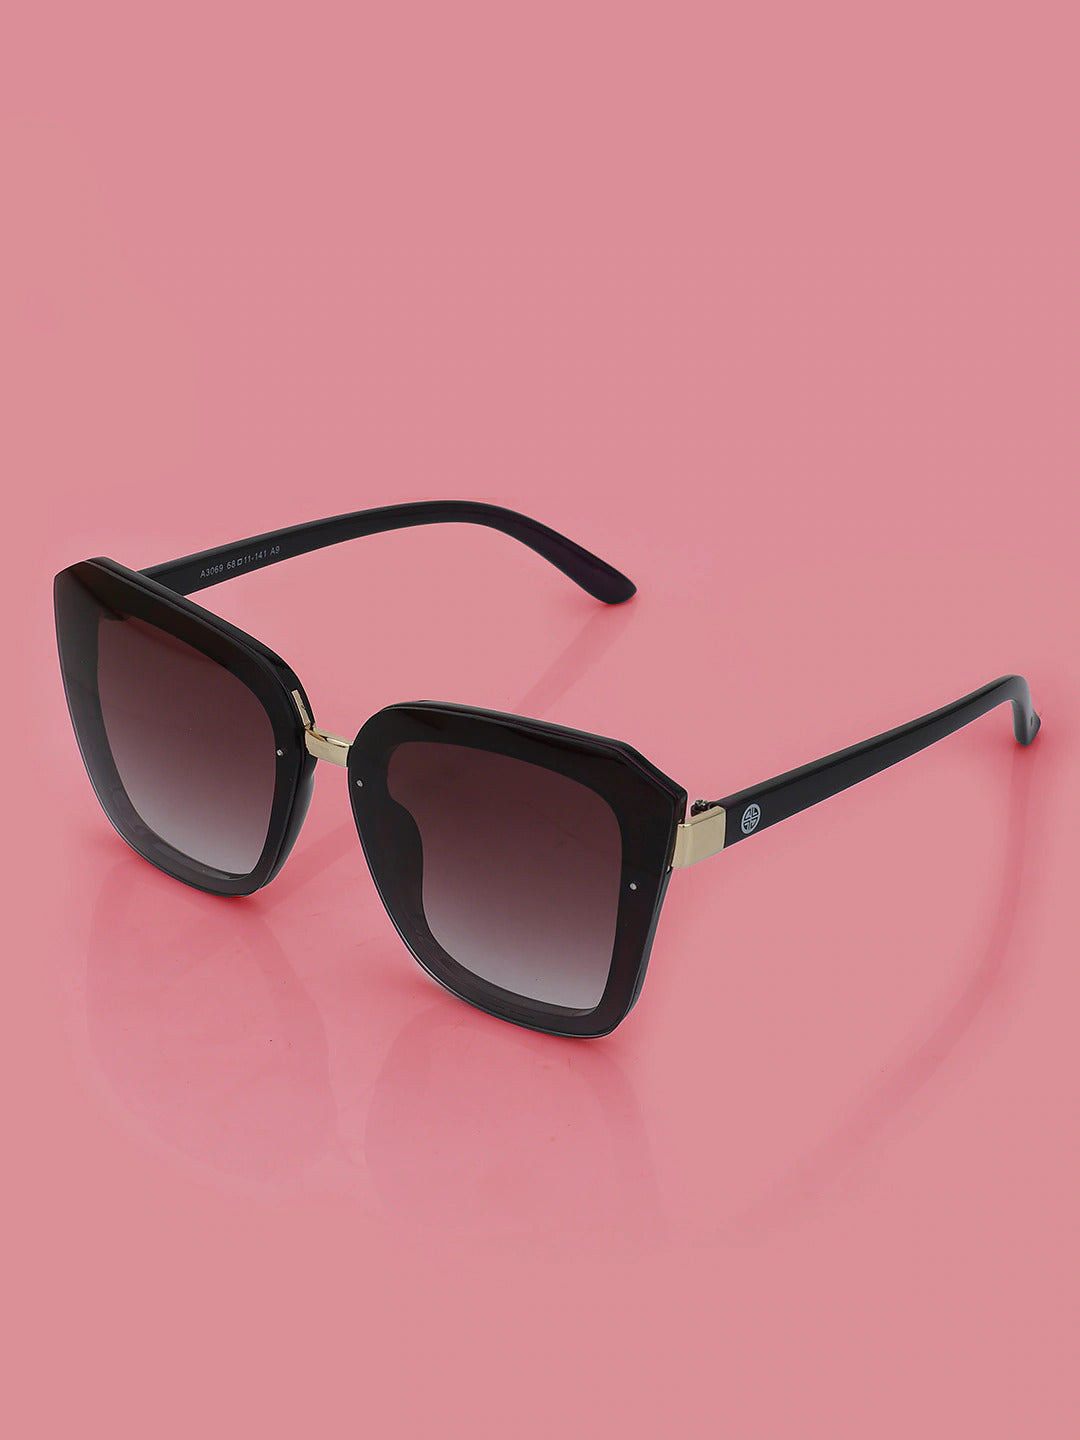 Carlton London Regular Lens Square Sunglasses For Women